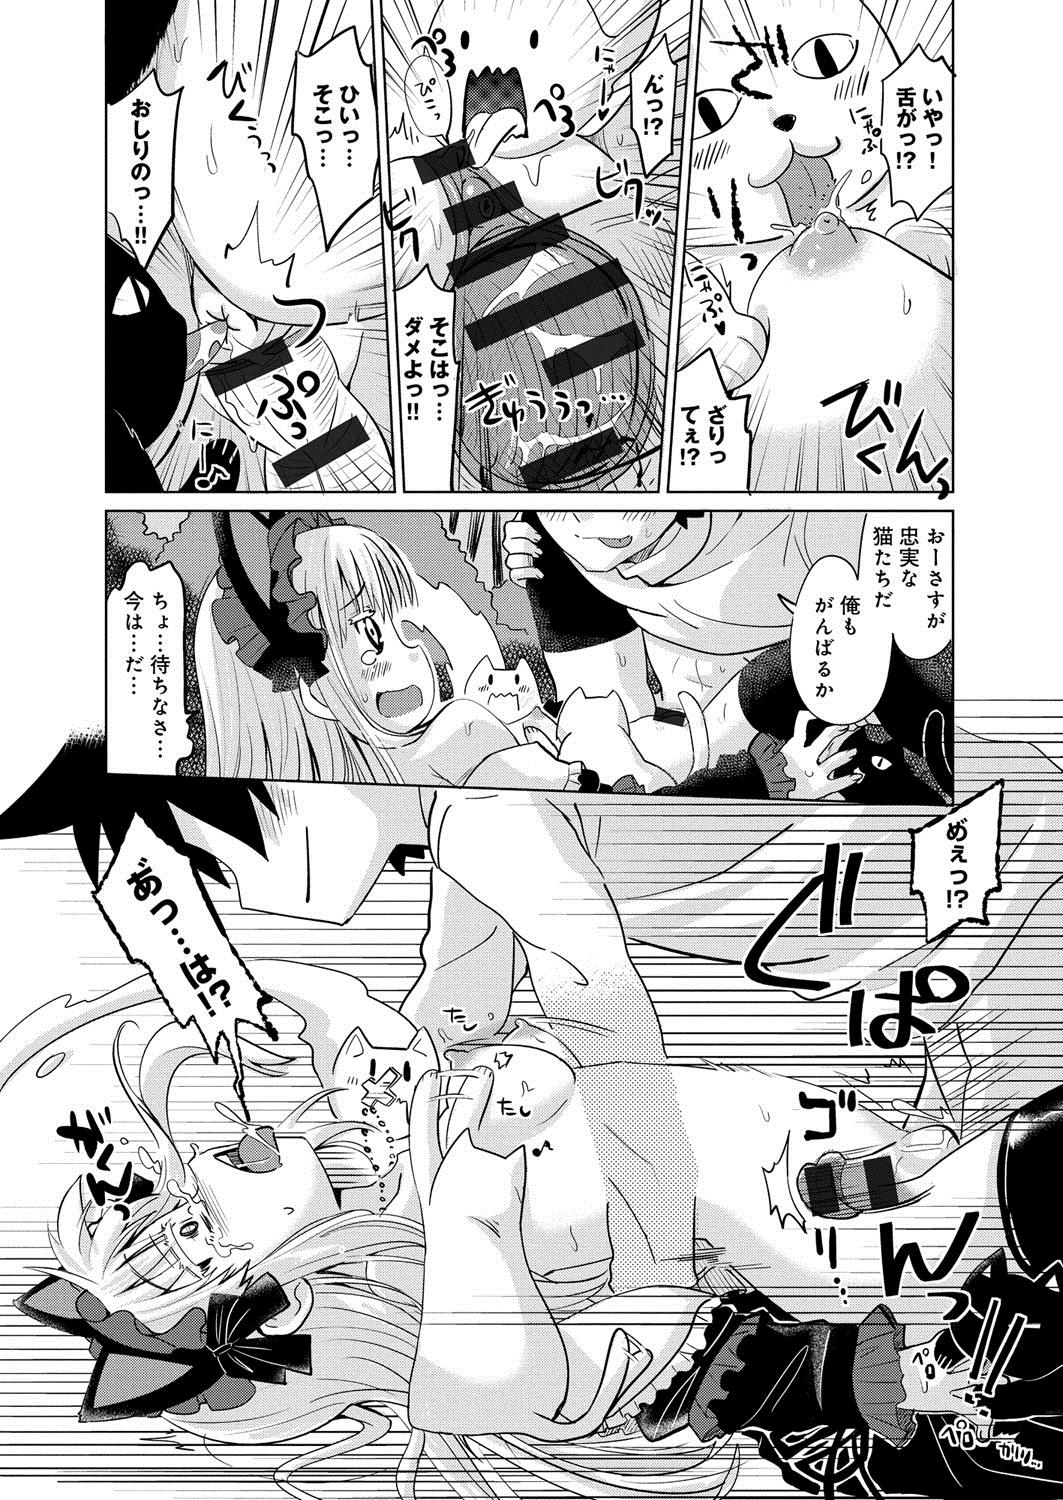 [Anthology] Lord of Valkyrie Adult - Comic Anthology R18 Handakara Saigomade... Mou, Kishi-sama no Ecchi♪ 78